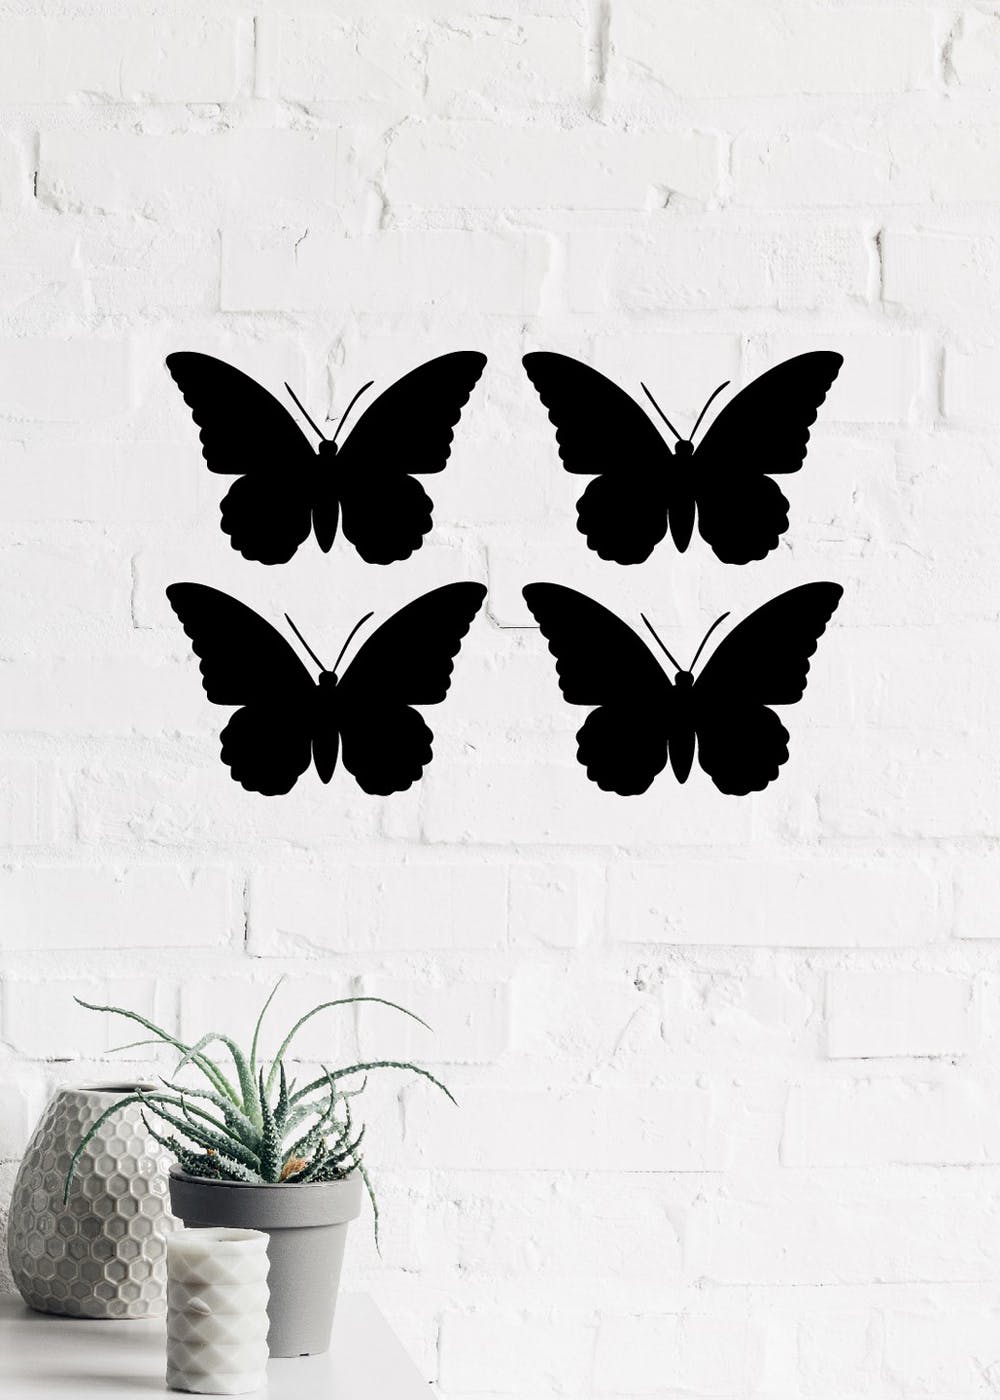 Set of 4 "Butterflies" Black Engineered Wood Wall Art Cutout